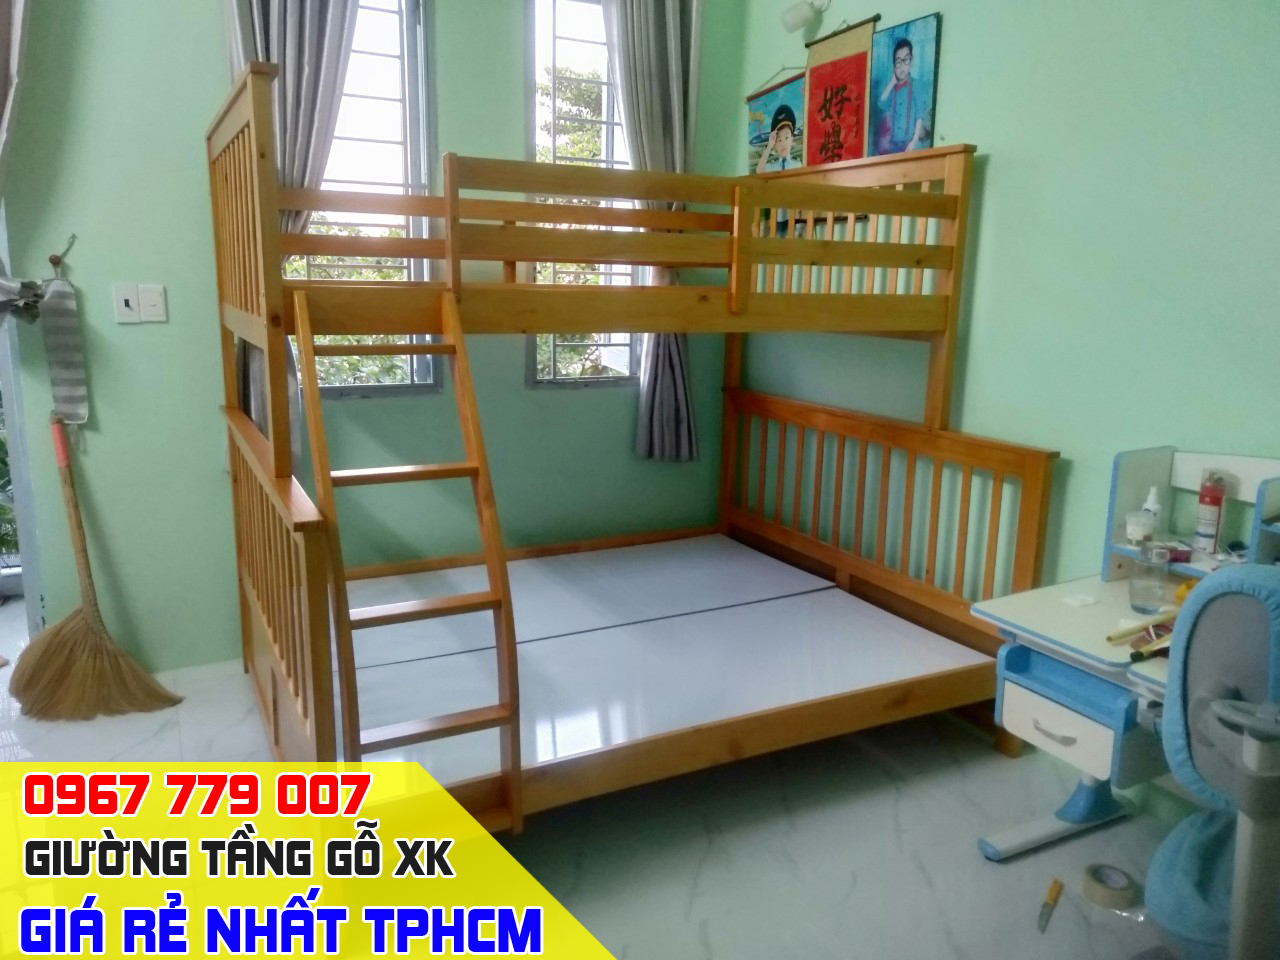 CH bán giường tầng trẻ em giá rẻ uy tín nhất Quận Gò Vấp TPHCM 18